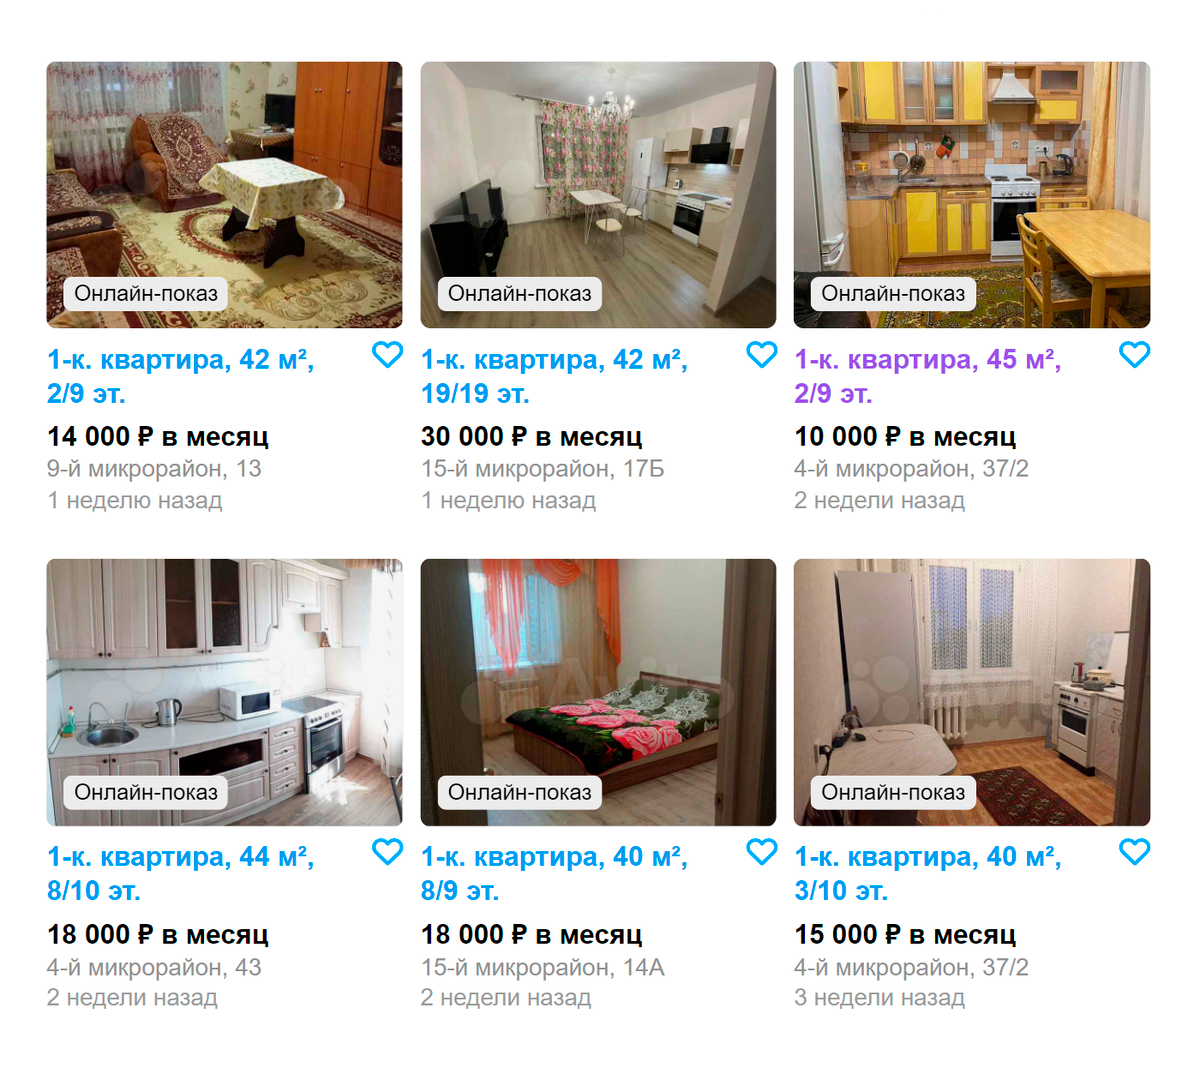 Цены на аренду однокомнатных квартир в нашем городе. Источник: avio.ru